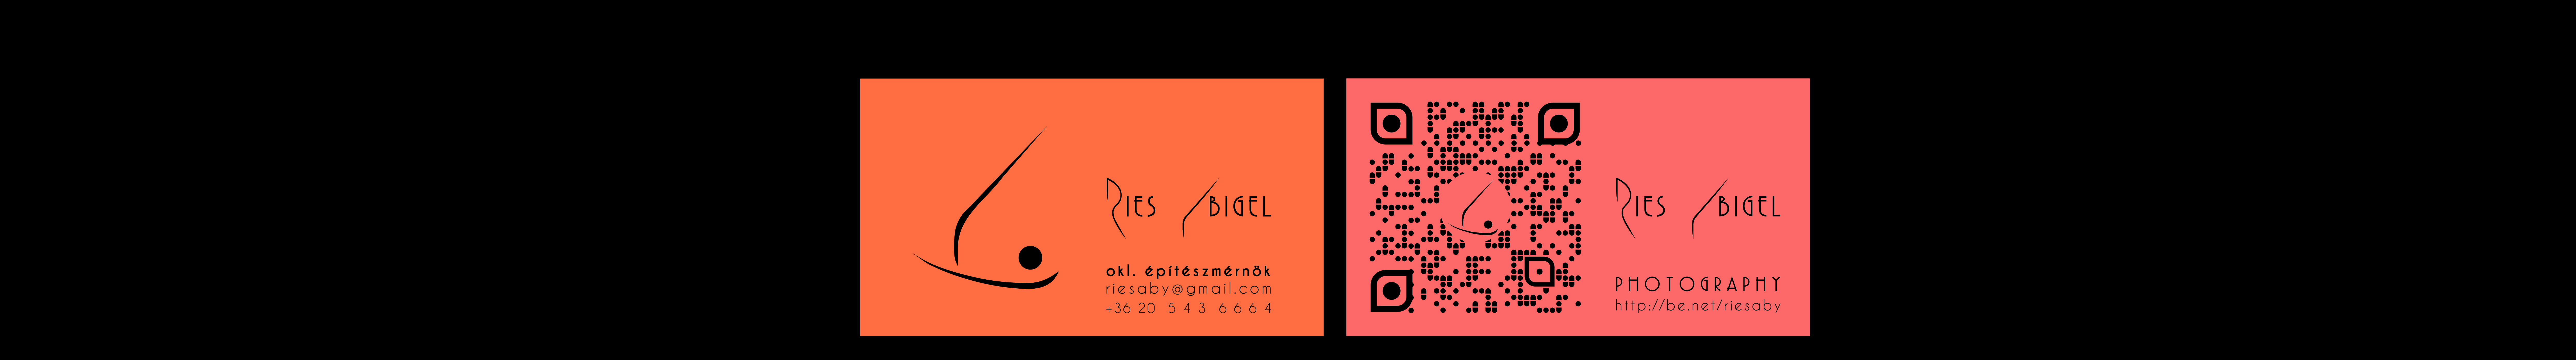 Abigel Riesz's profile banner